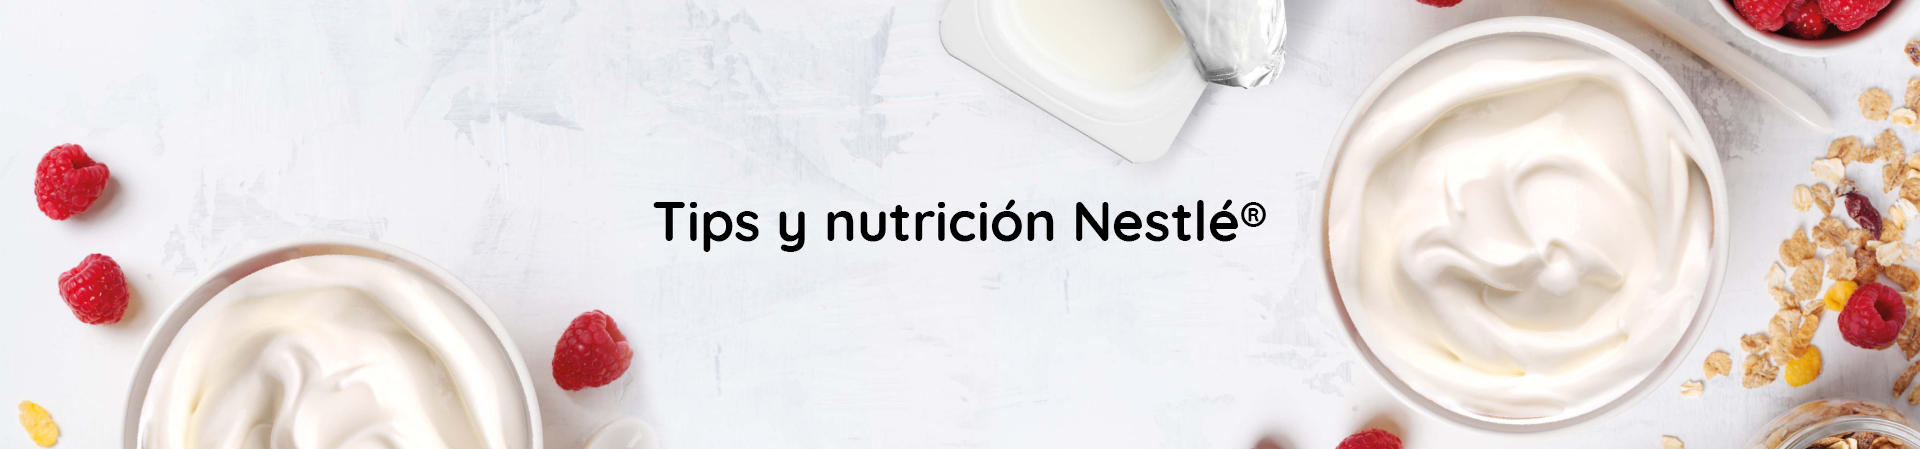 Tips y nutrición Nestlé®